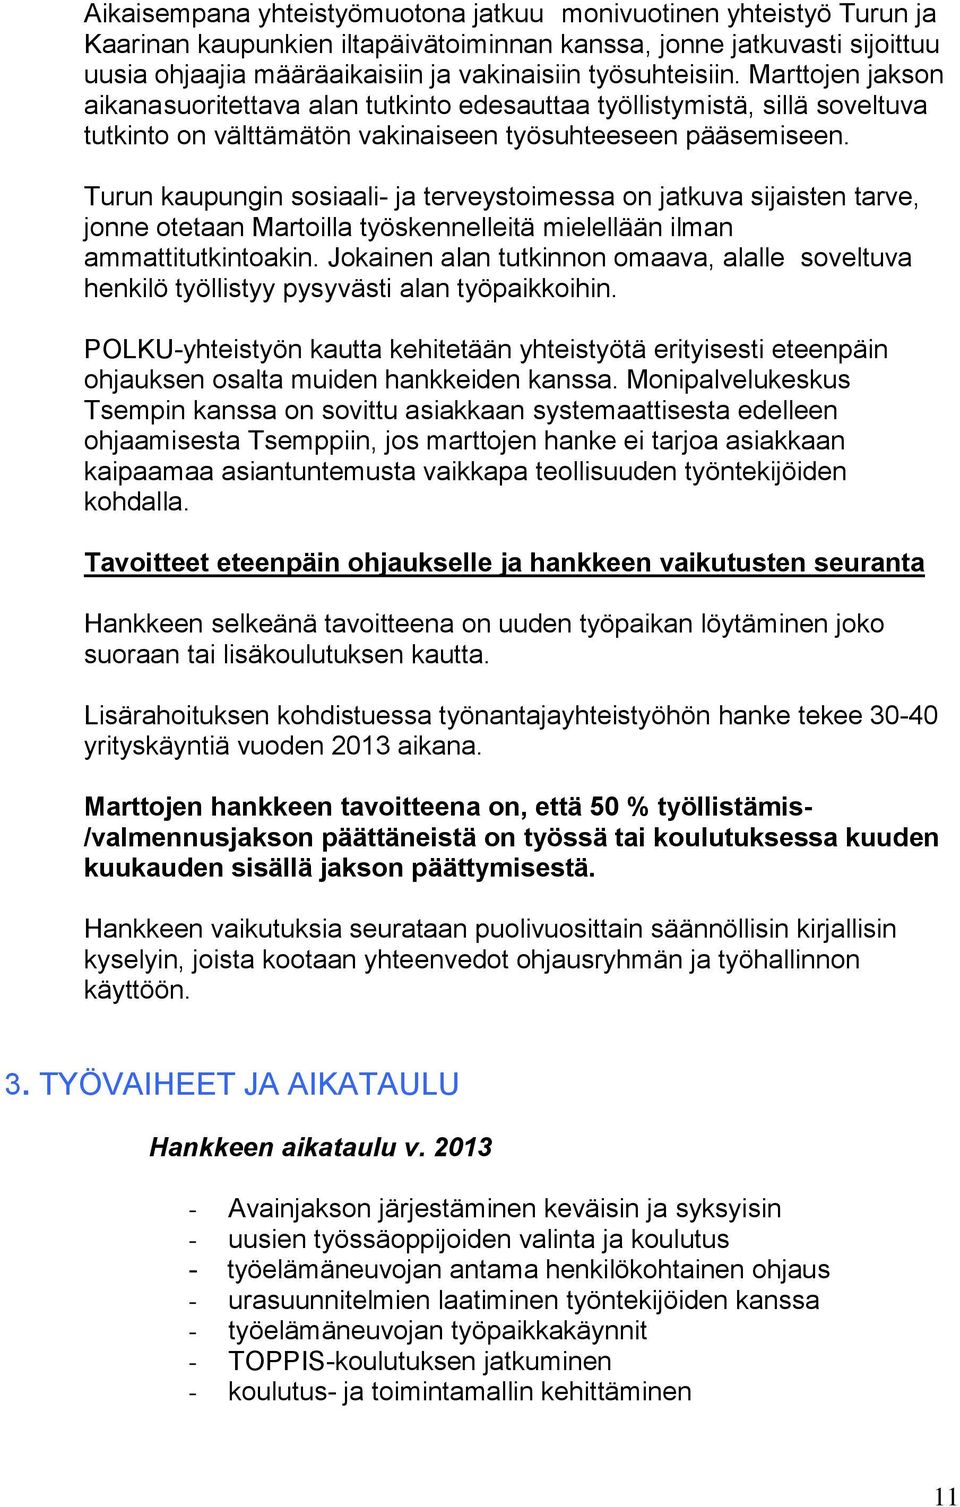 Turun kaupungin sosiaali- ja terveystoimessa on jatkuva sijaisten tarve, jonne otetaan Martoilla työskennelleitä mielellään ilman ammattitutkintoakin.